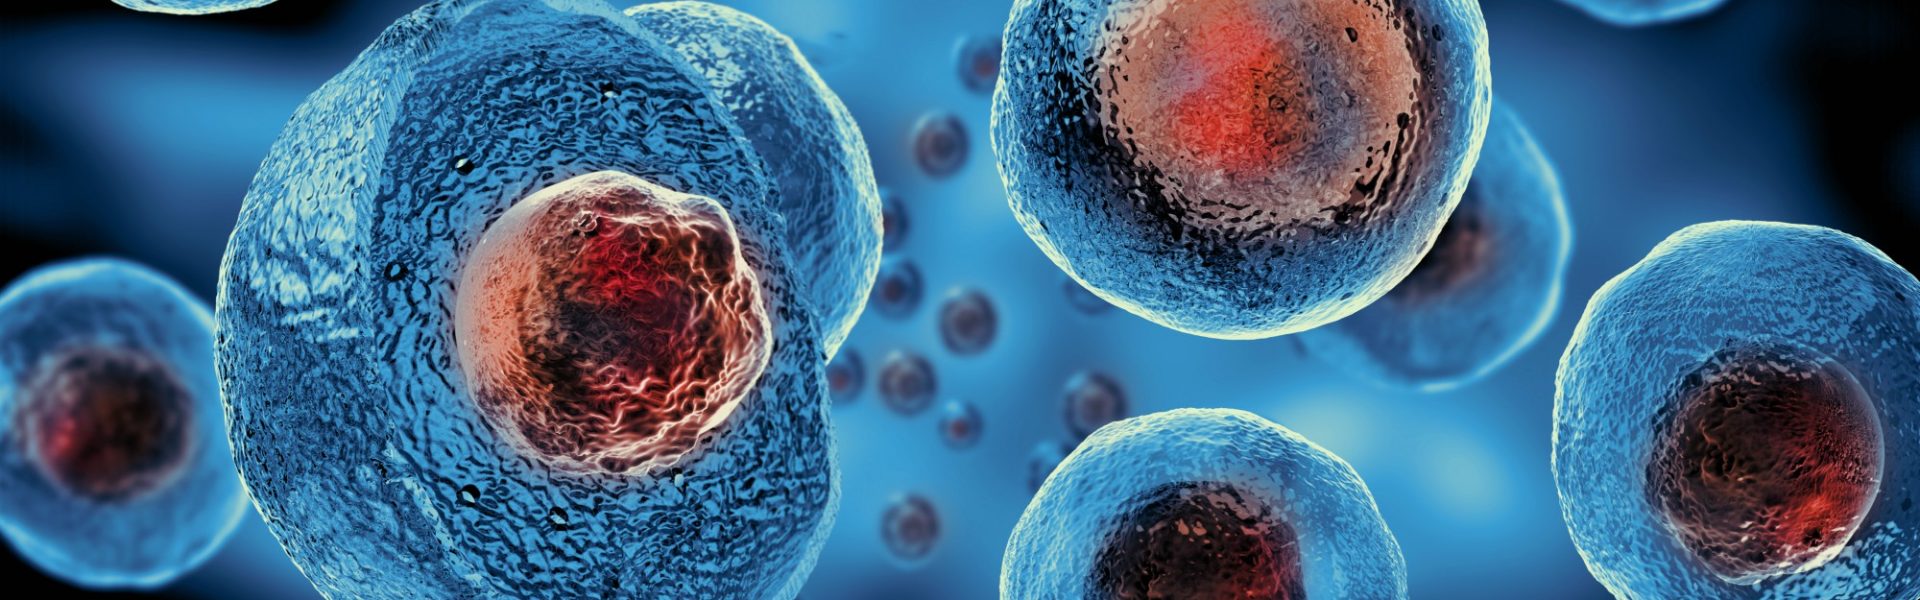 Células-tronco: o que são e principais aplicações